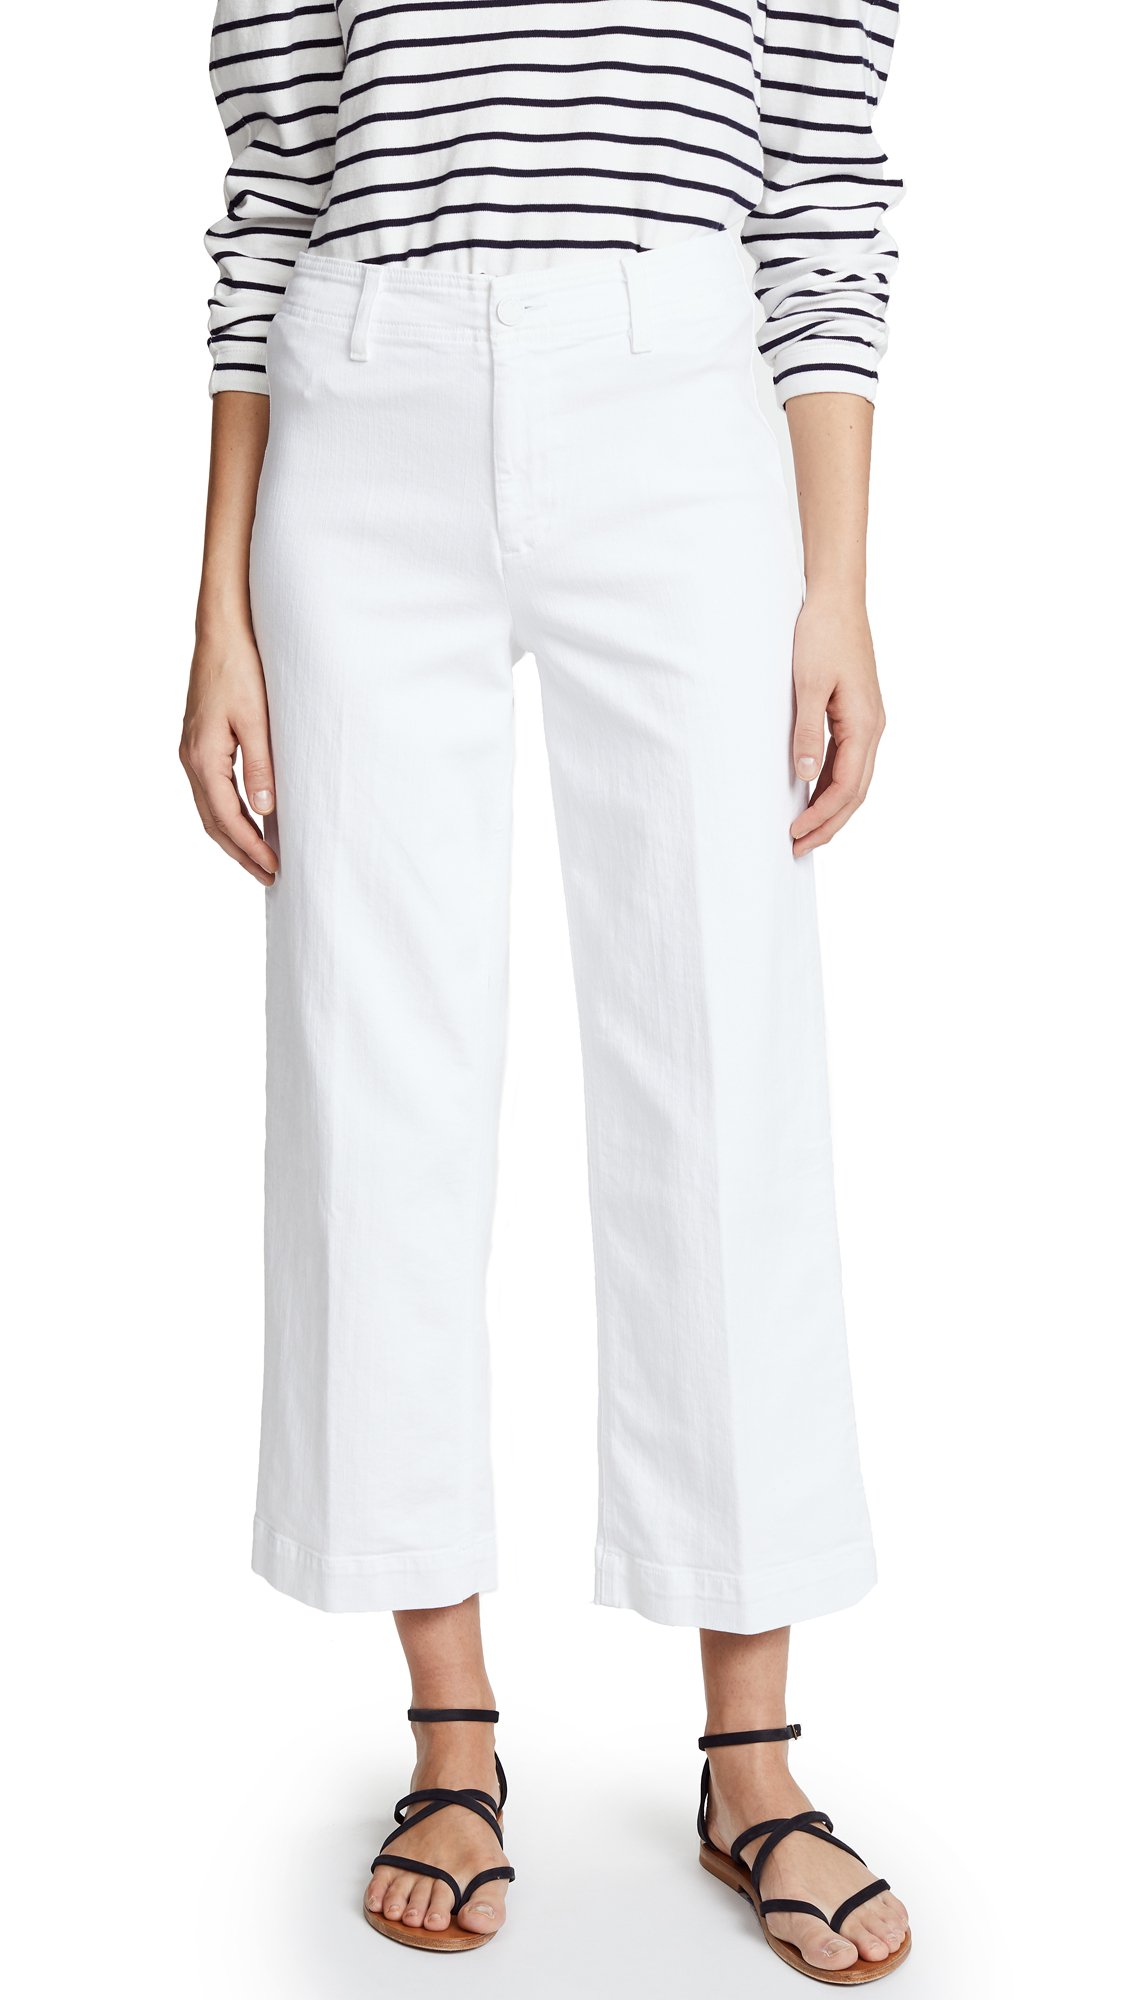 PAIGE Women's Nellie Culotte Jeans, Crisp White, 26